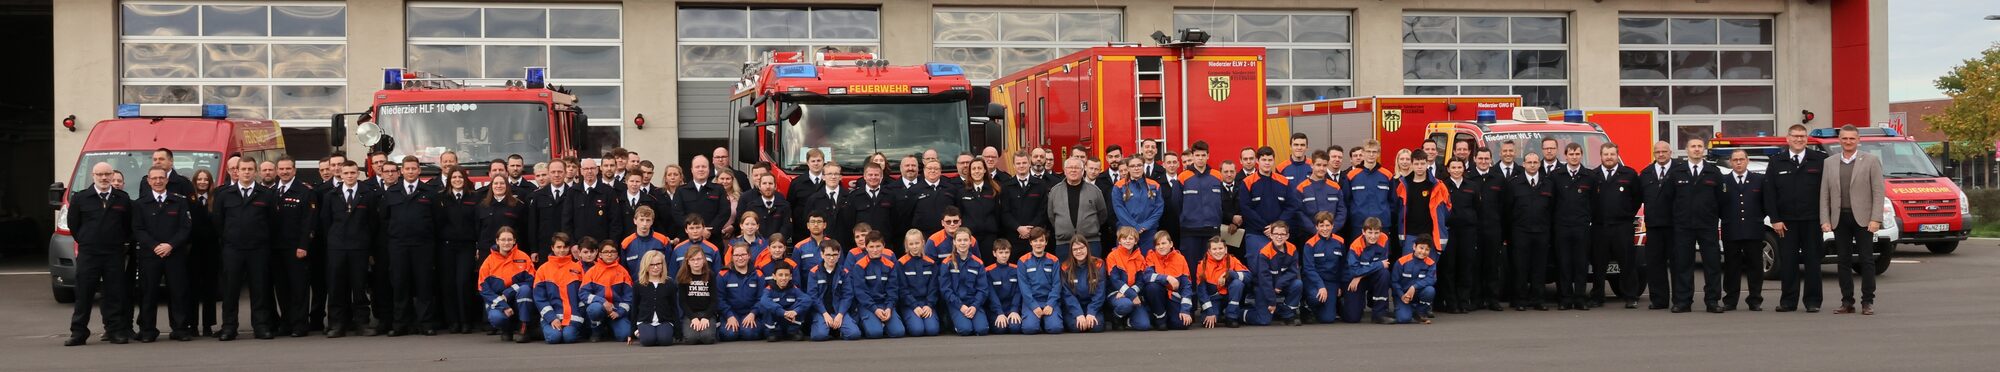 Gruppenbild zur Jahreshauptversammlung der Freiwilligen Feuerwehr der Gemeinde Niederzier